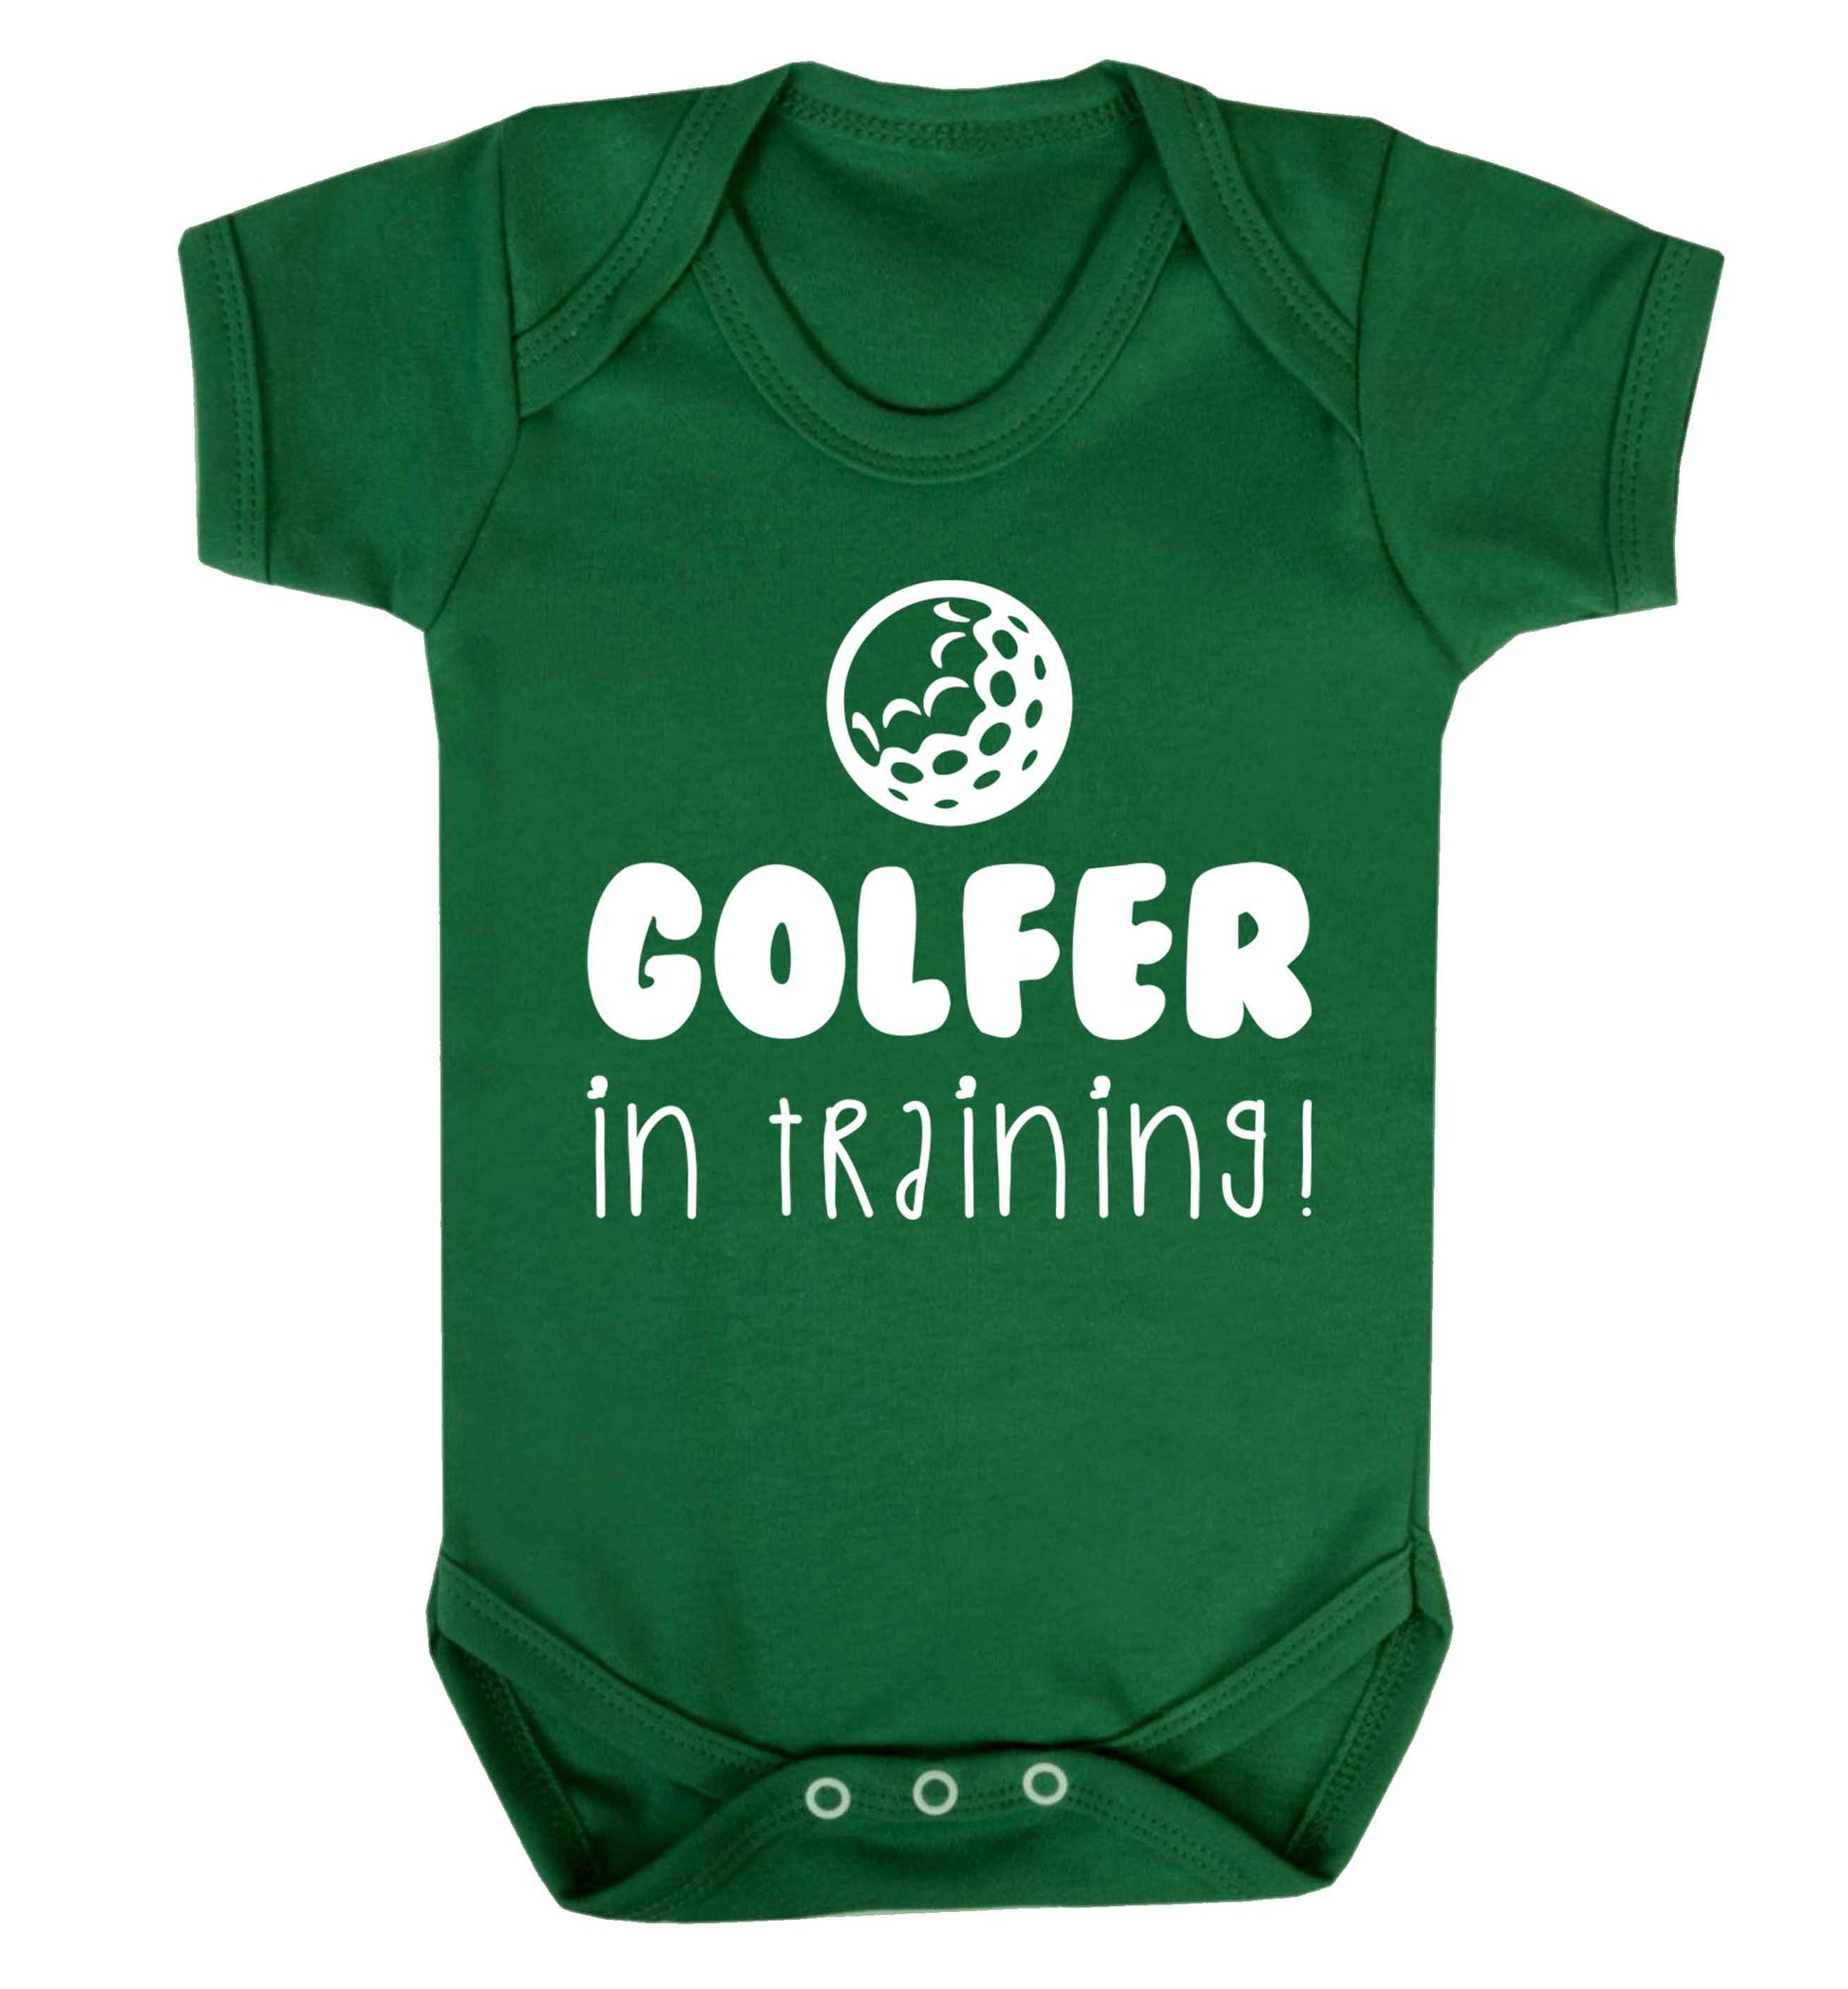 Golfer in training Baby Vest green 18-24 months